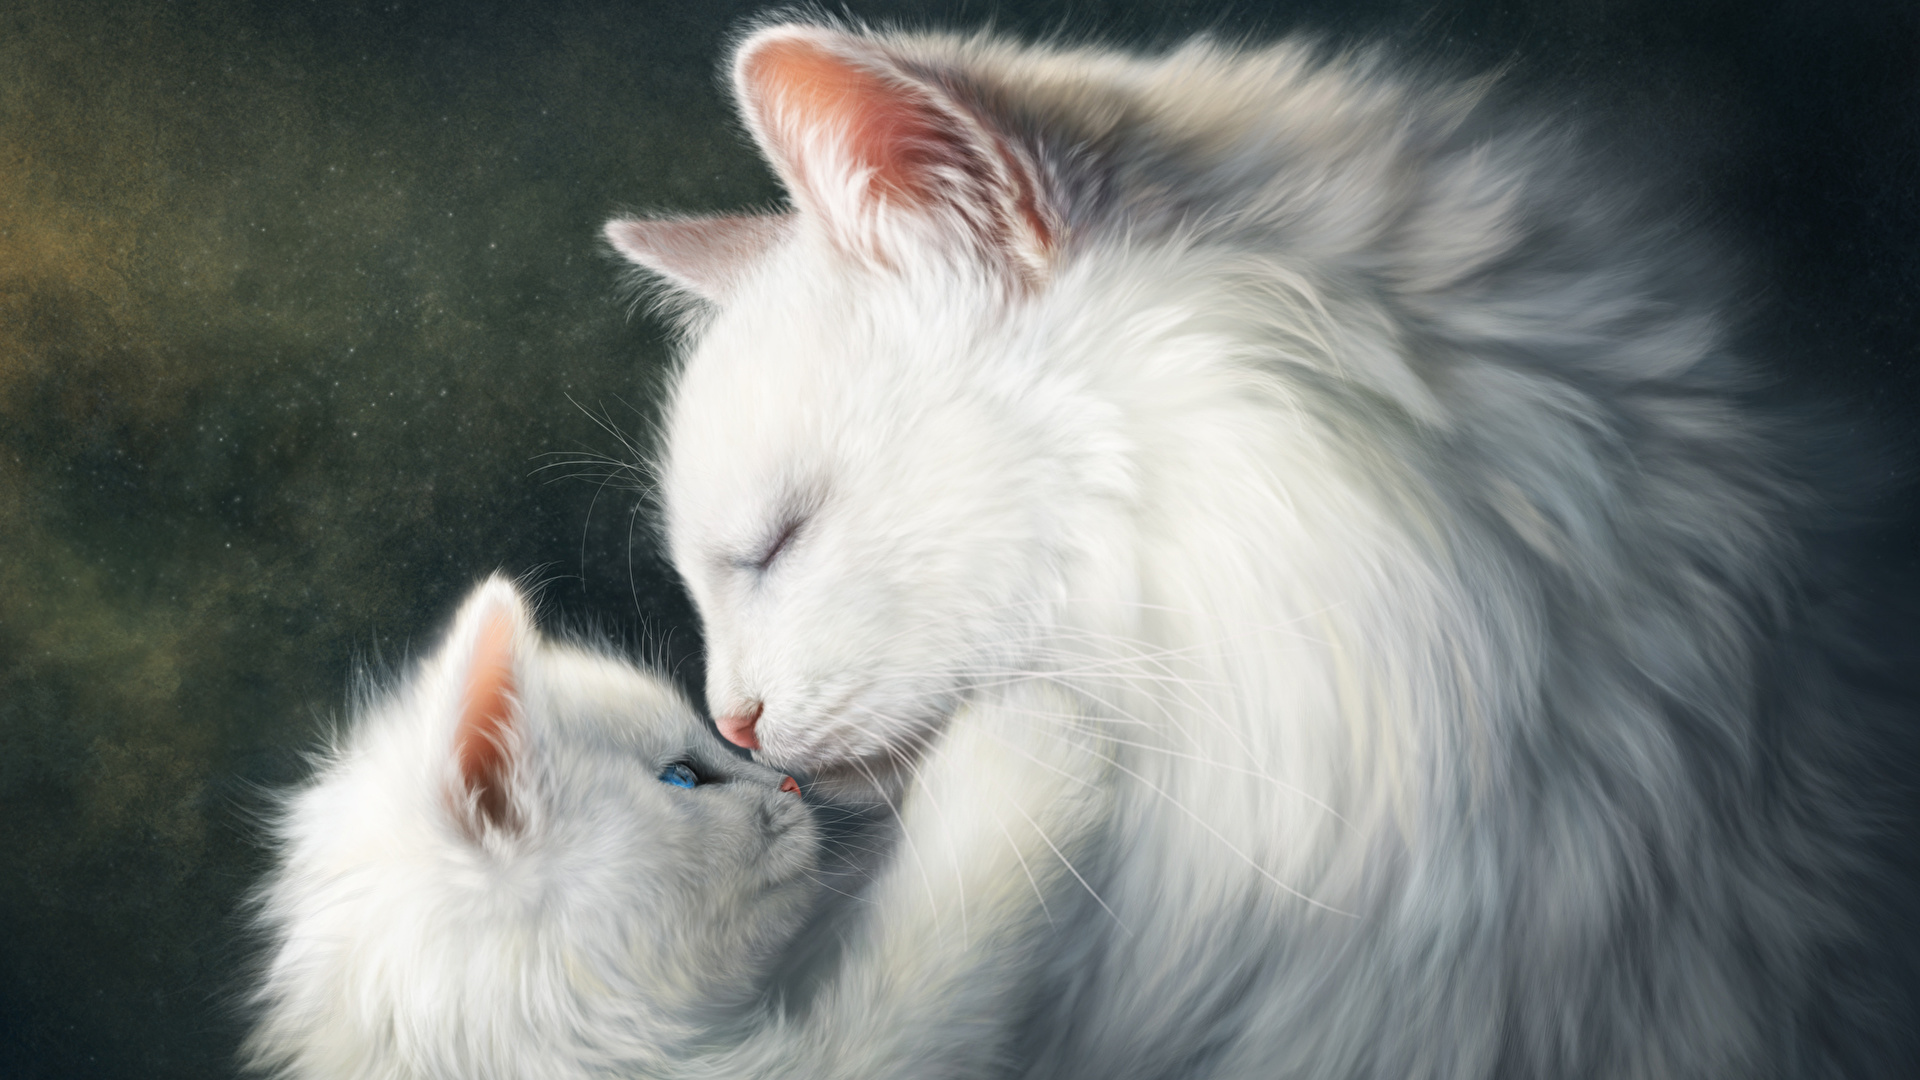 壁紙 19x1080 飼い猫 描かれた壁紙 愛 2 二つ 子猫 白 可愛い 動物 ダウンロード 写真